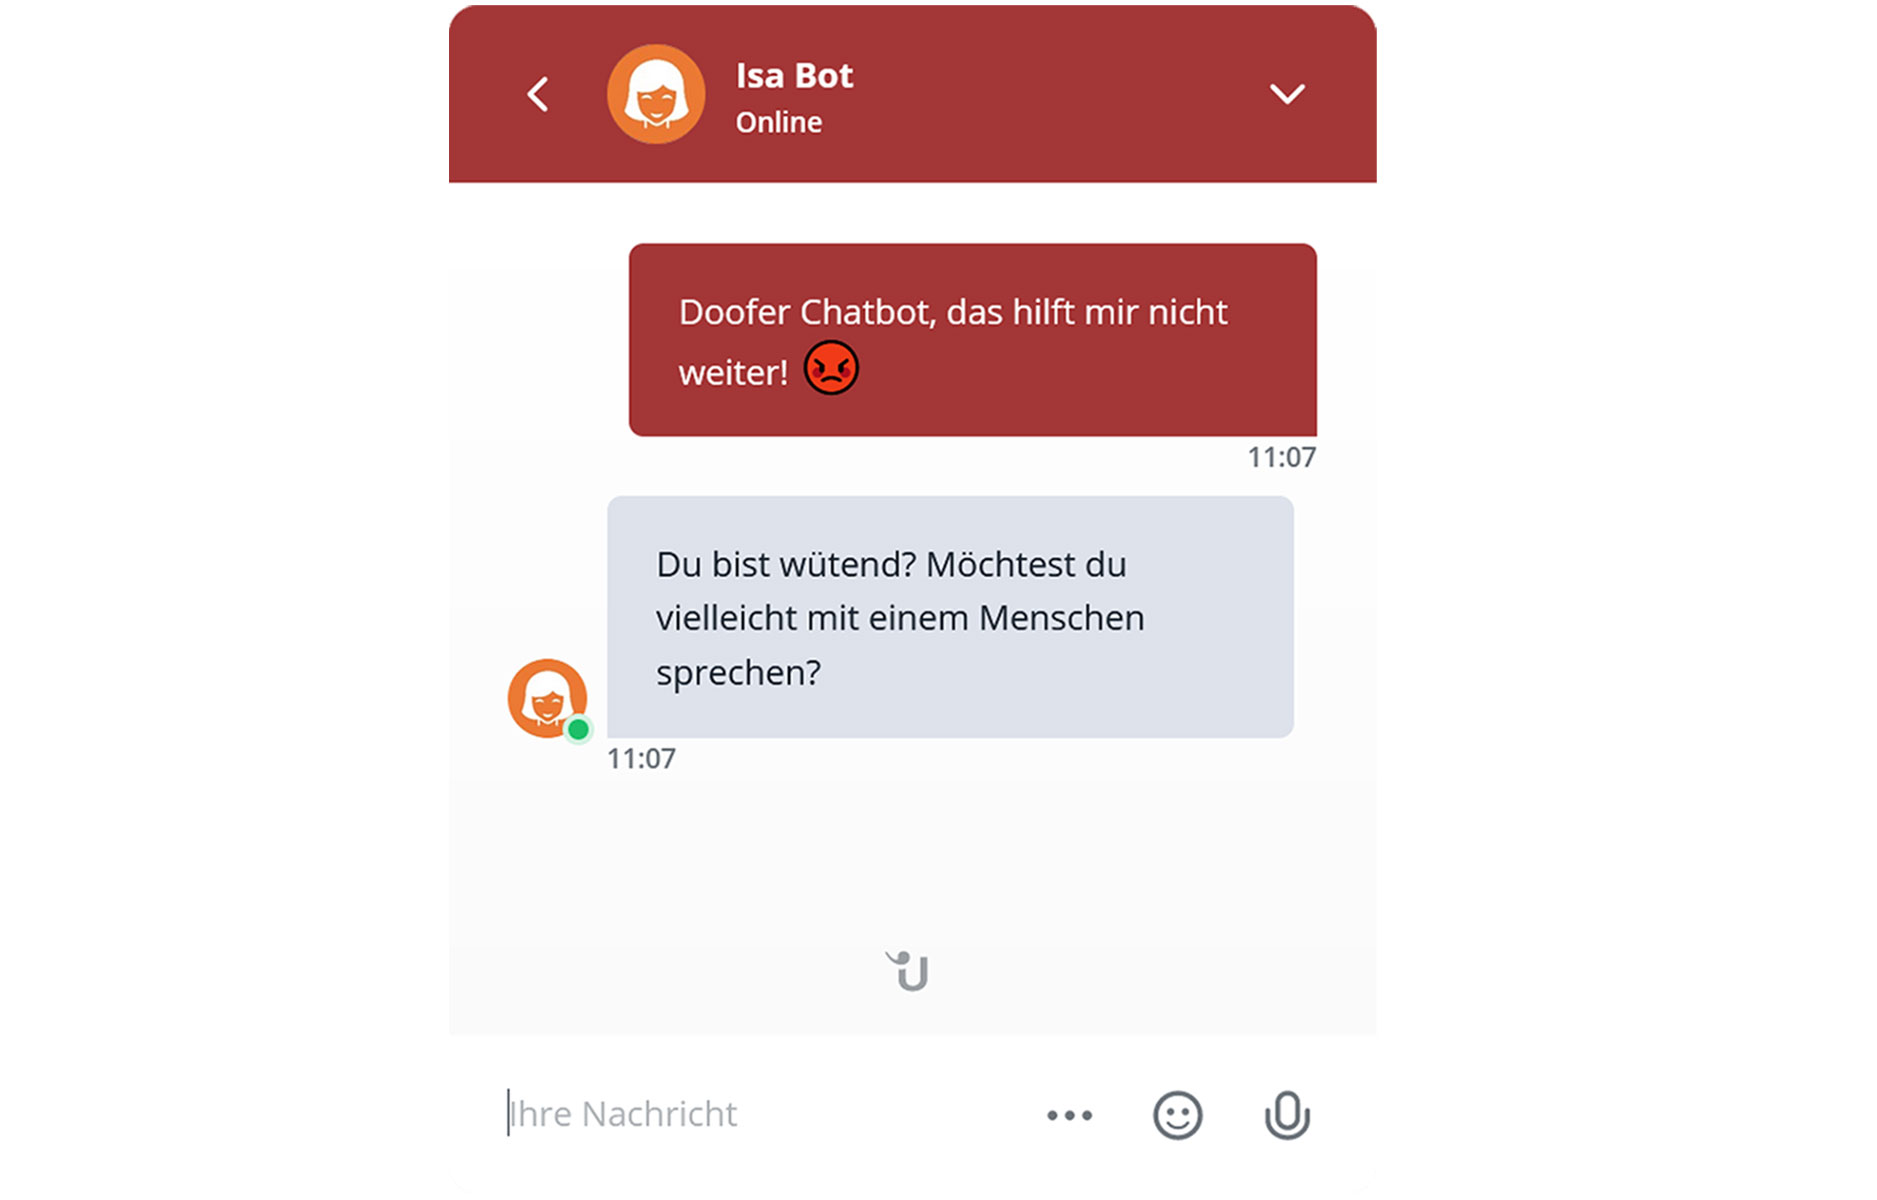 Ausschnitt eines Dialogs zwischen einem Chatbot und Kunden